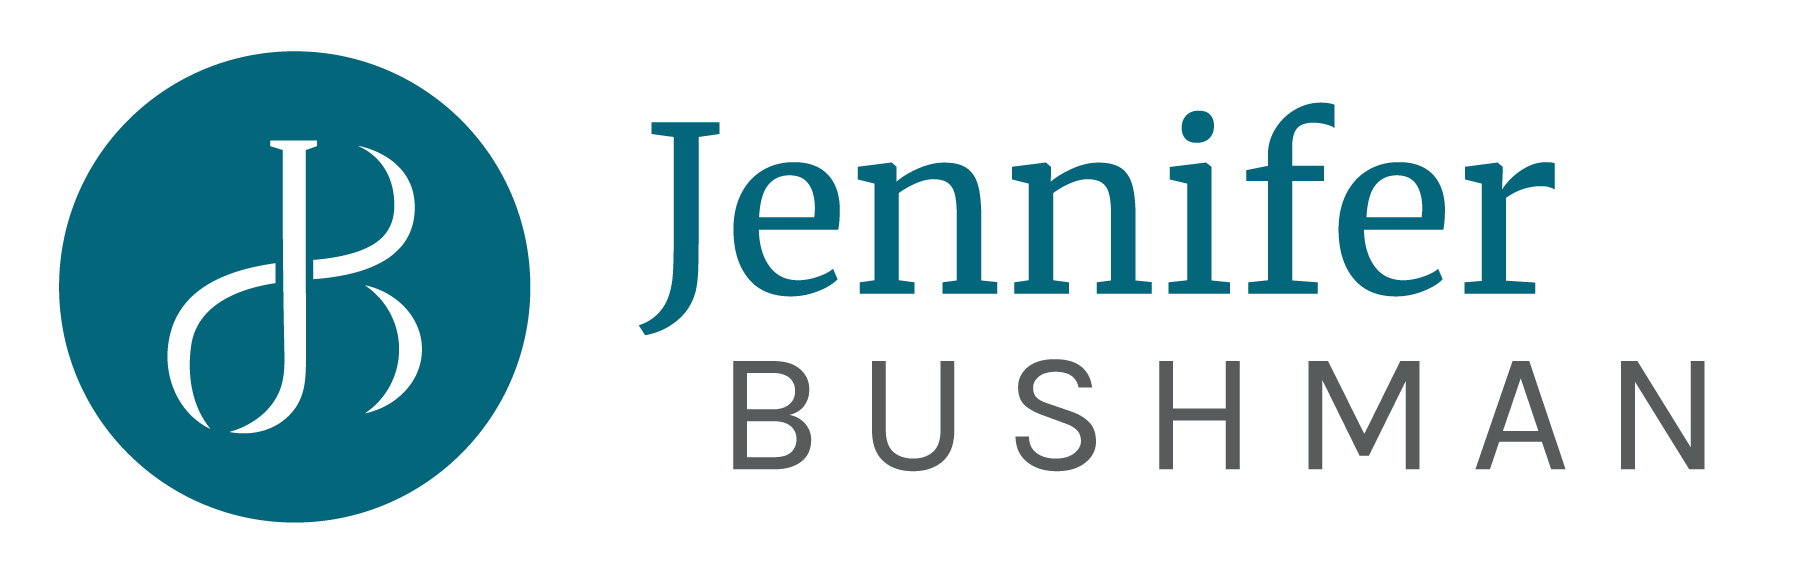 Jennifer Bushman